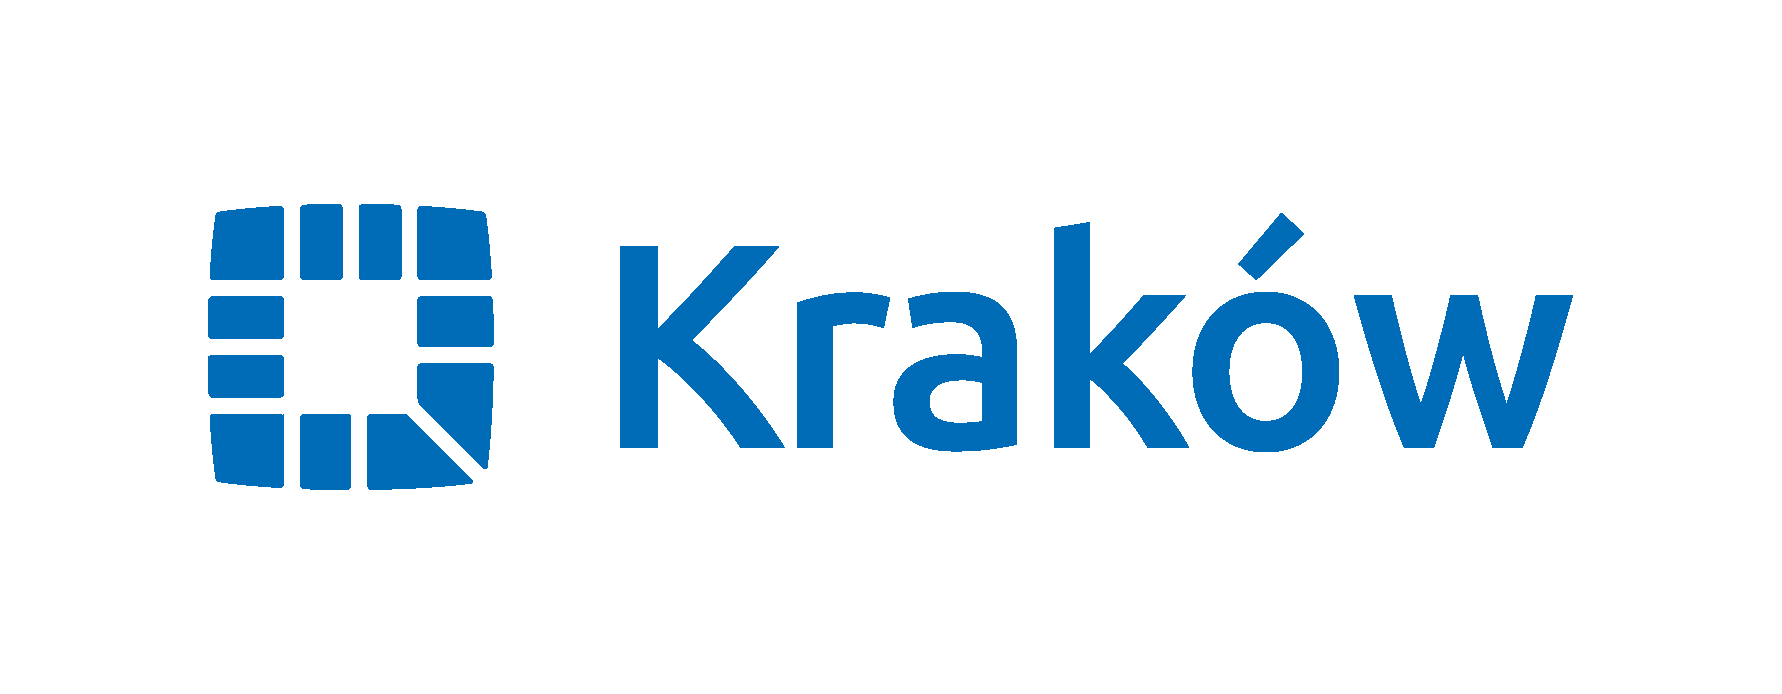 Logo Krakowa